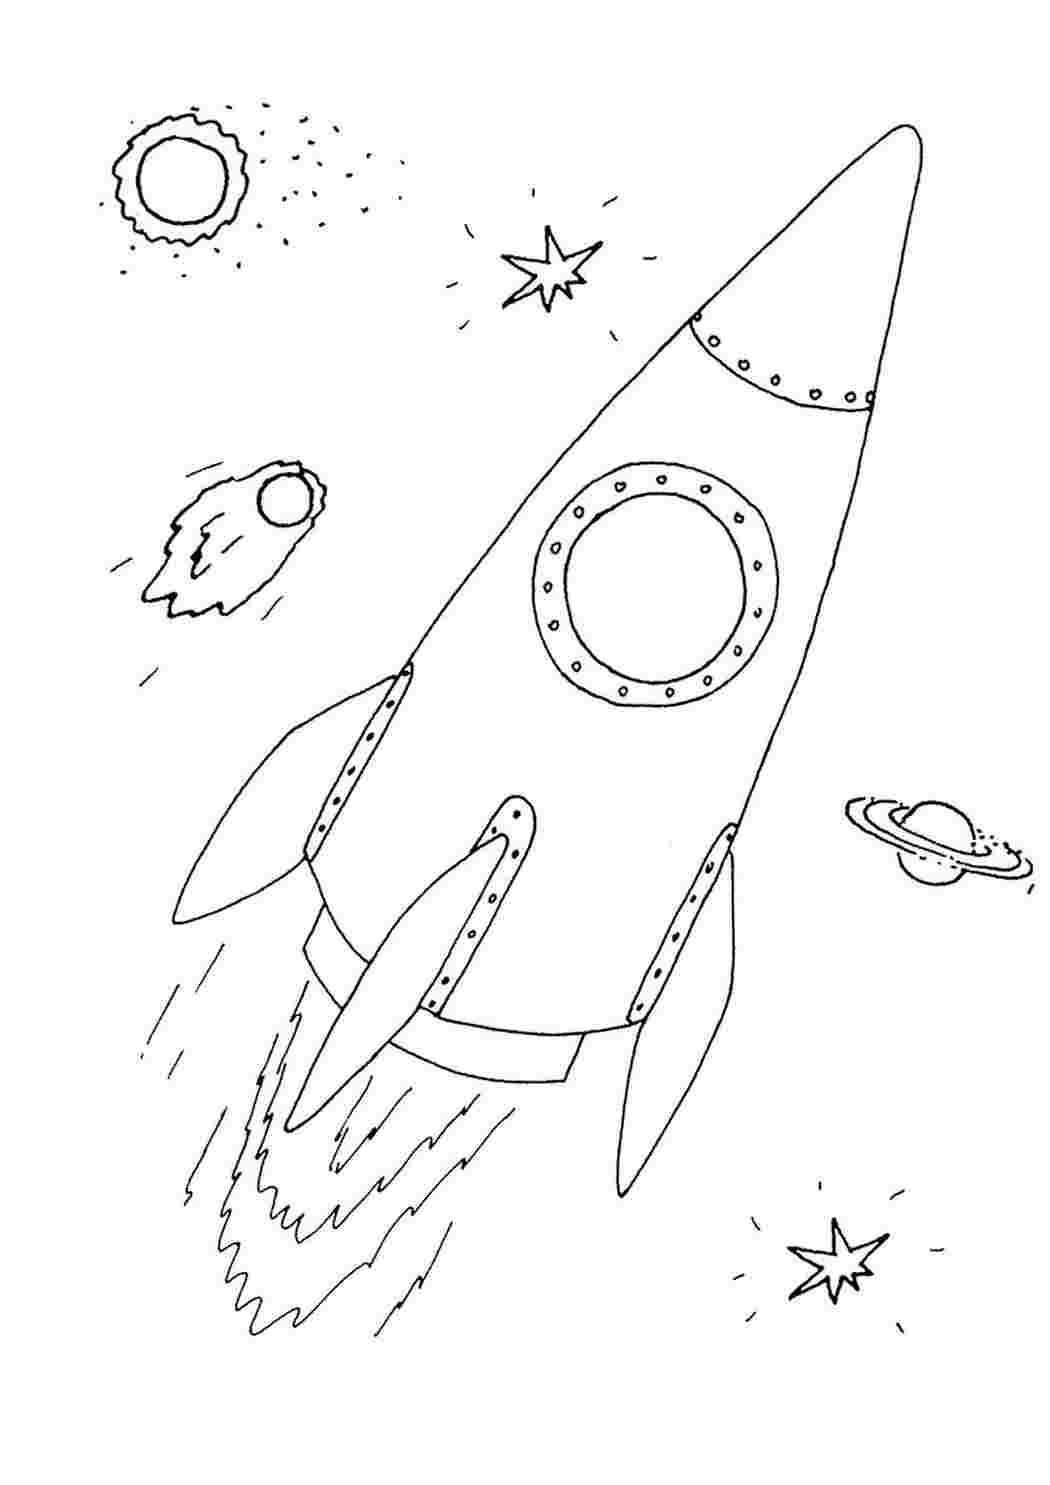 Рисунок на день космонавтики раскраска. Космос раскраска для детей. Рисунок ко Дню космонавтики набросок. Раскраска для малышей. Космос. Ракета раскраска.